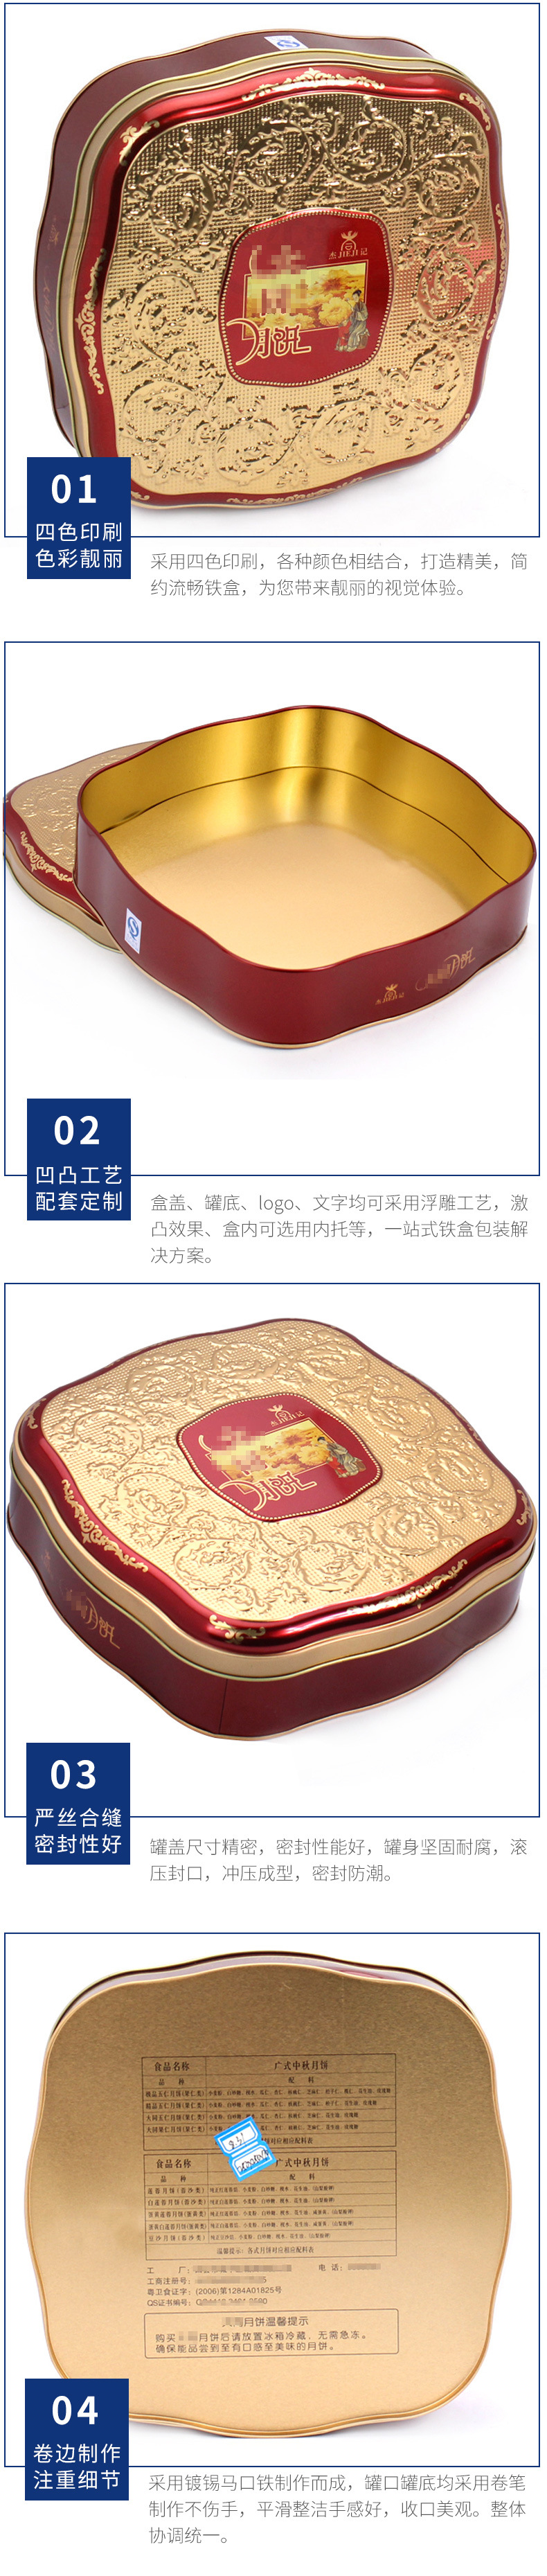 异形月饼铁盒定制 四个装月饼铁盒包装 年货食品铁盒包装生产厂家示例图14